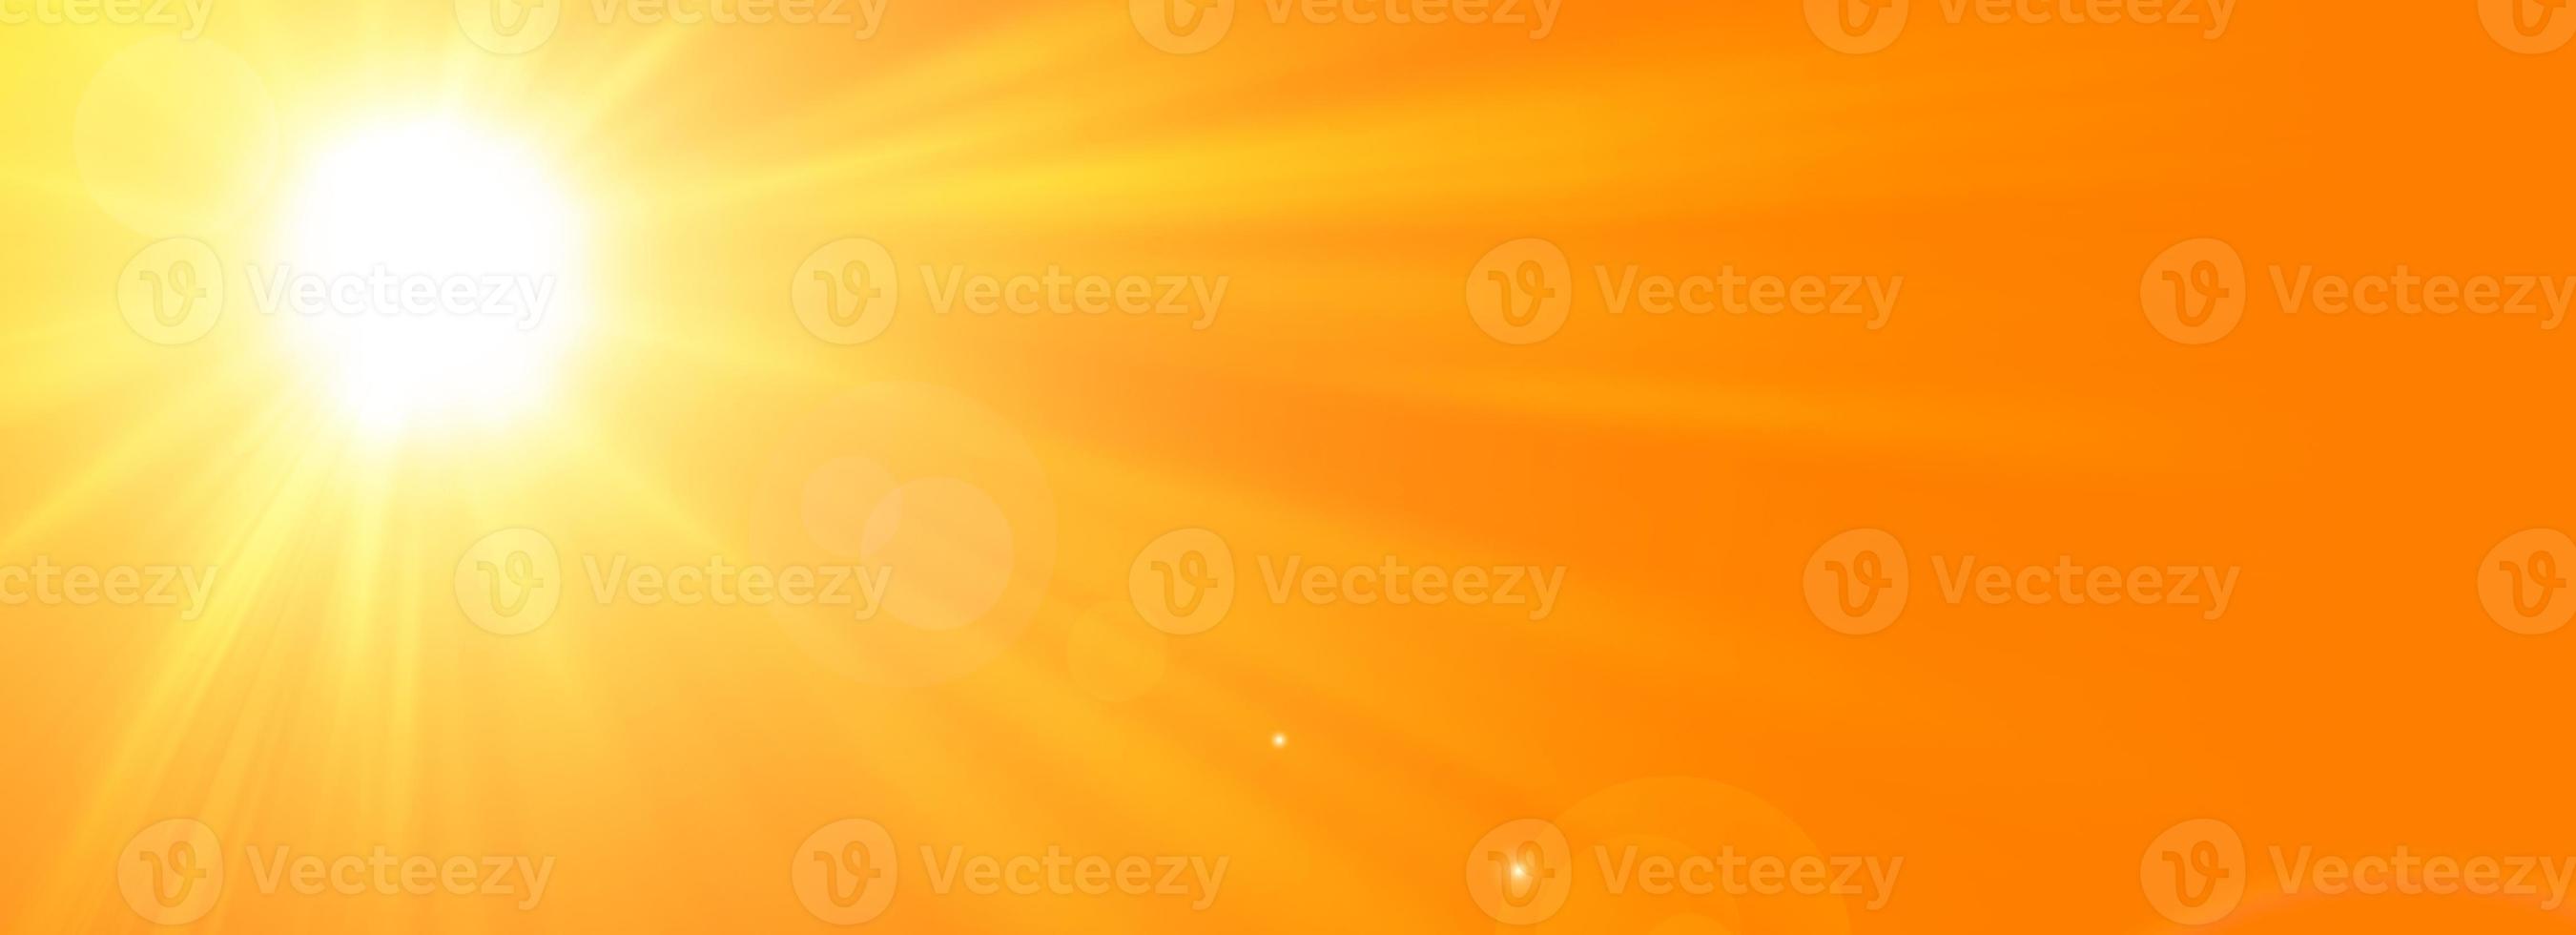 fond d'été ensoleillé avec le soleil éclatant sur fond orange photo